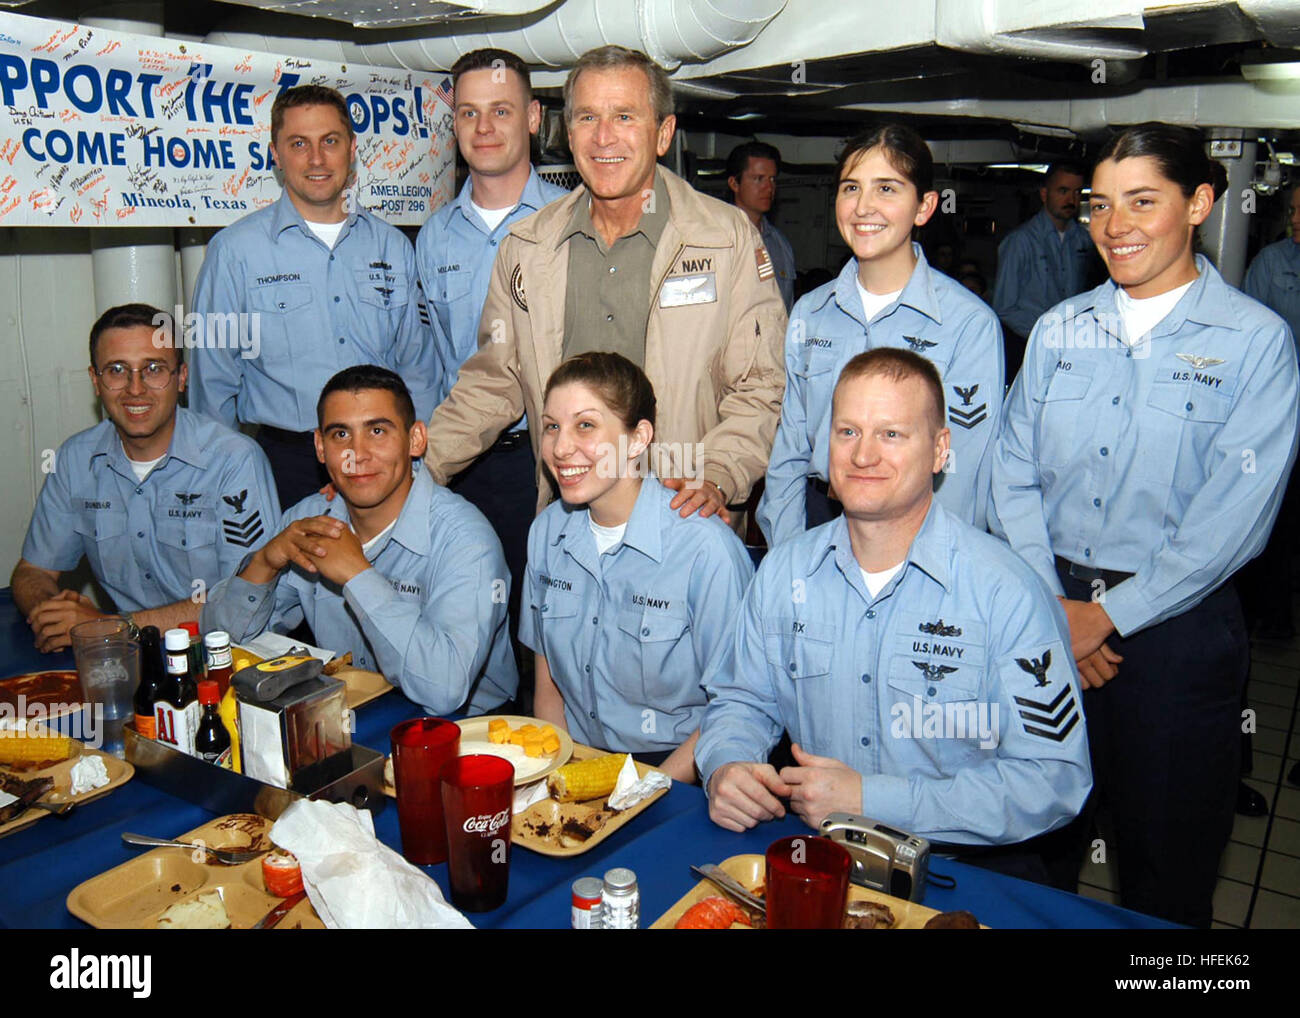 030501-N-0000C-002 de l'océan Pacifique (1 mai 2003) -- Ordnanceman Aviation aviateur Timothy Roberts (assis, au centre à gauche) qui partage Midland, Texas, en tant que ville natale avec le président George Bush, pose pour une photo avec le président. Airman Roberts a été choisi pour participer à un dîner avec le Président sur l'USS ABRAHAM LINCOLN (CVN 72) mess arrière meck. Le dîner a eu lieu dans le cadre de la récente visite du président Bush au transporteur de classe Nimitz. U.S. Navy photo by PhotographerÕs Mate 3 classe Tyler J. Clements (libéré) US Navy 030501-N-0000C-002 Aviation aviateur Ordnanceman Timothy Roberts (assis, au centre à gauche) Banque D'Images